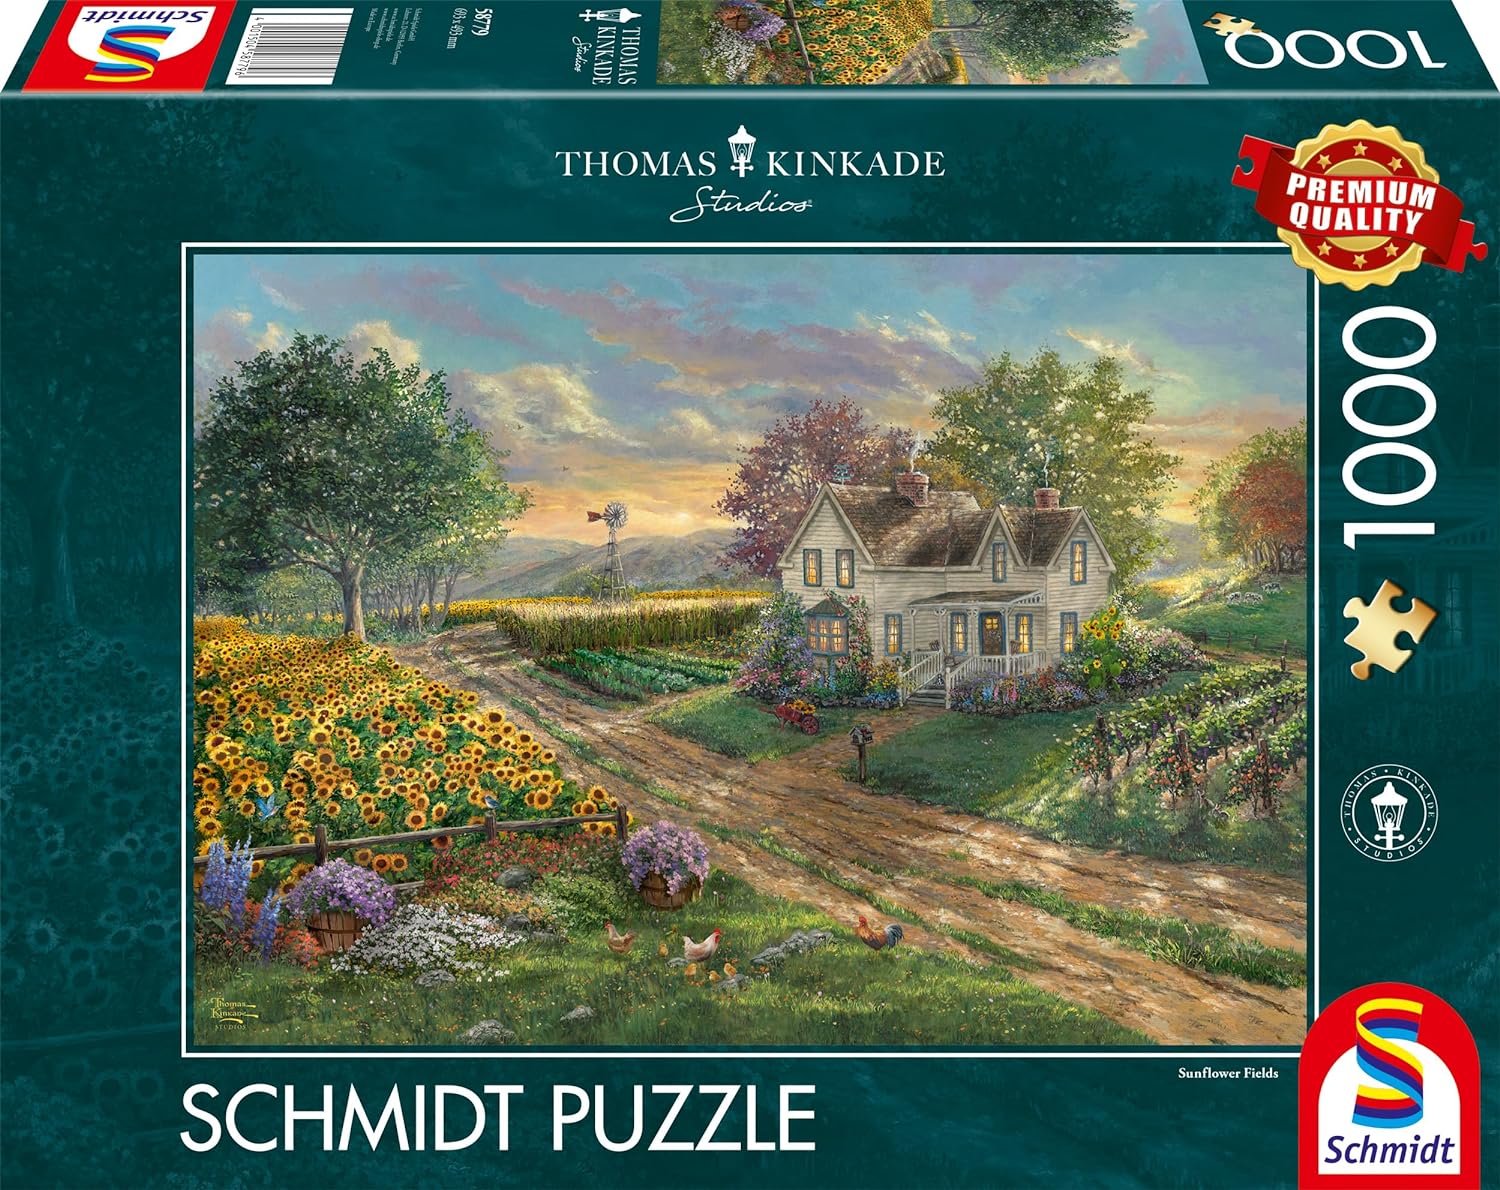 Thomas Kinkade: Sunflower Fields 1000 Piece Jigsaw Puzzle